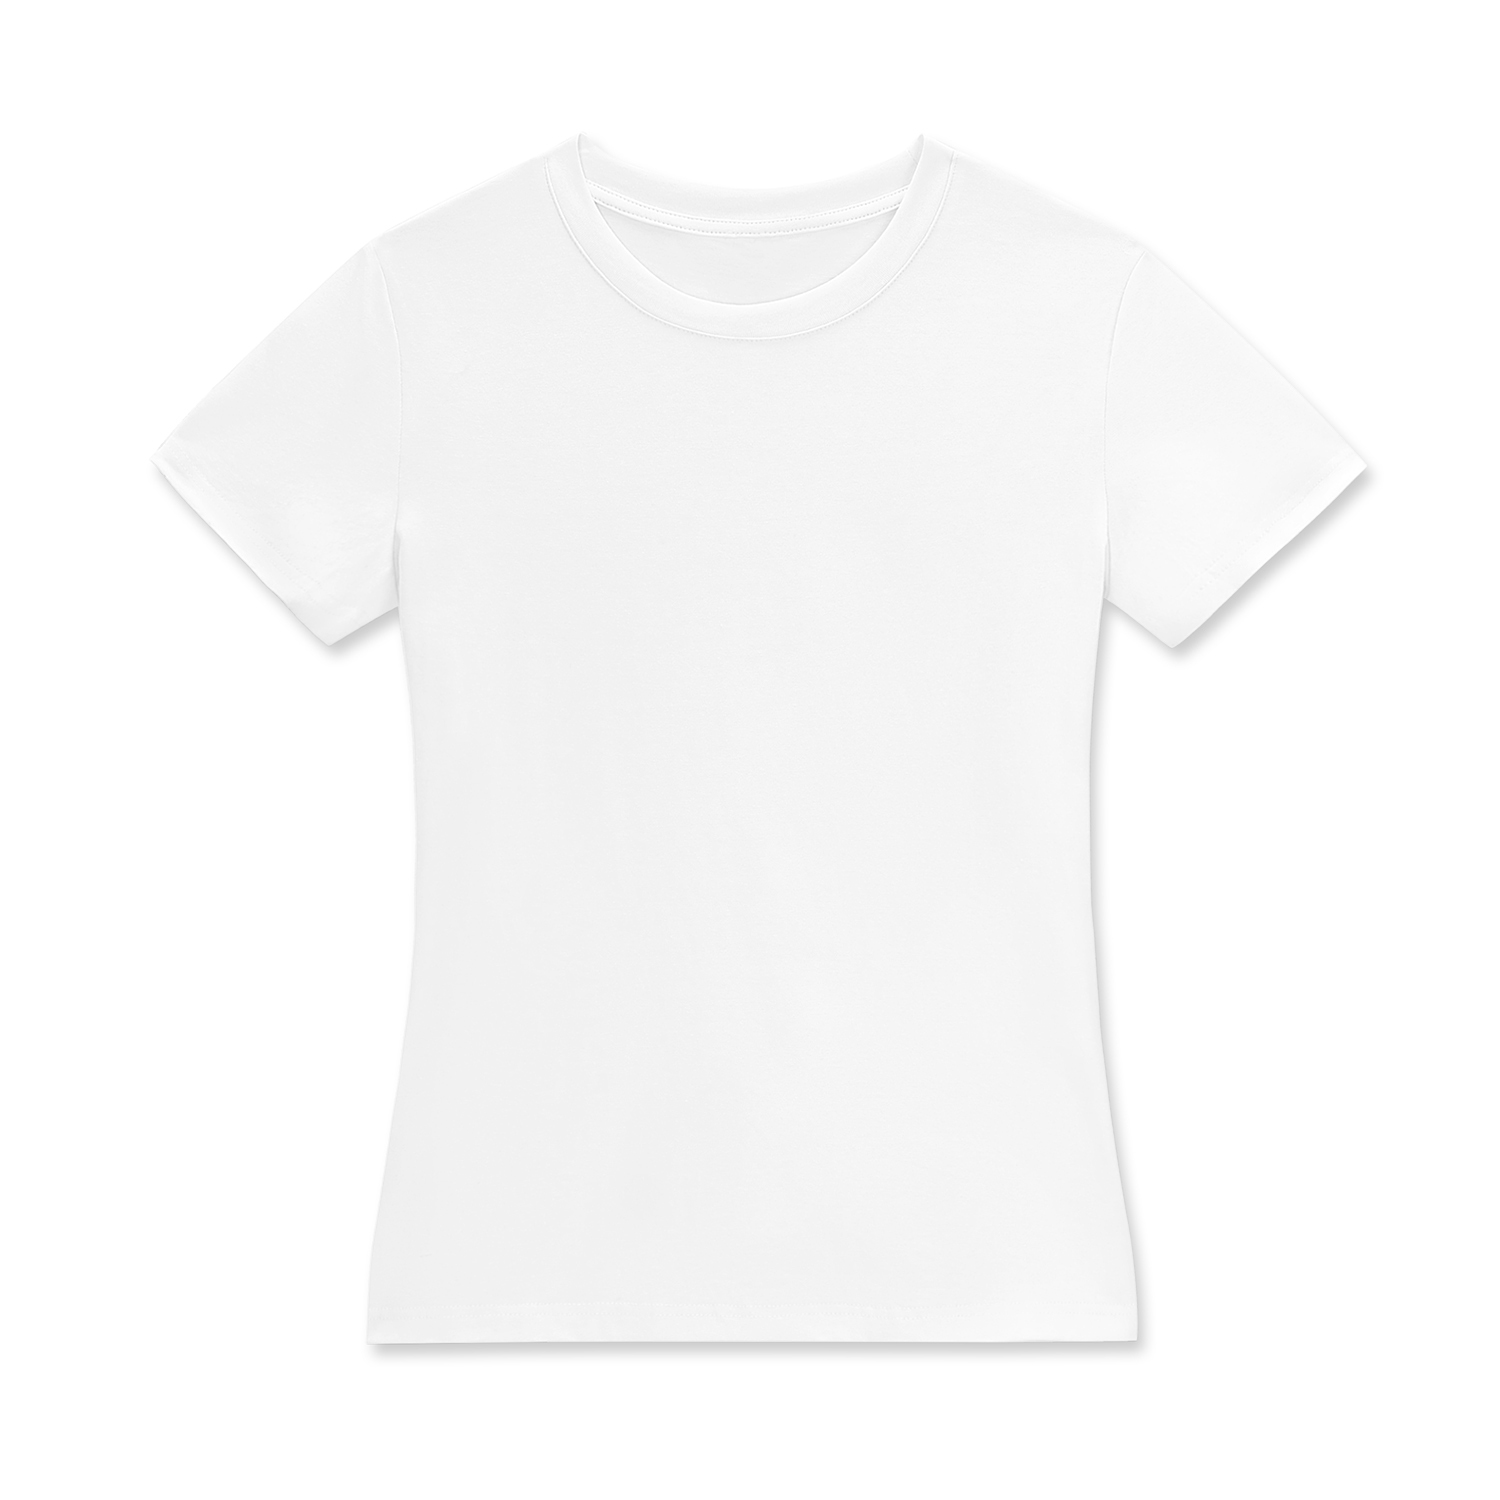 Customizable All-Over Print Women's Crew Neck T-Shirt - Print On Demand | HugePOD-1